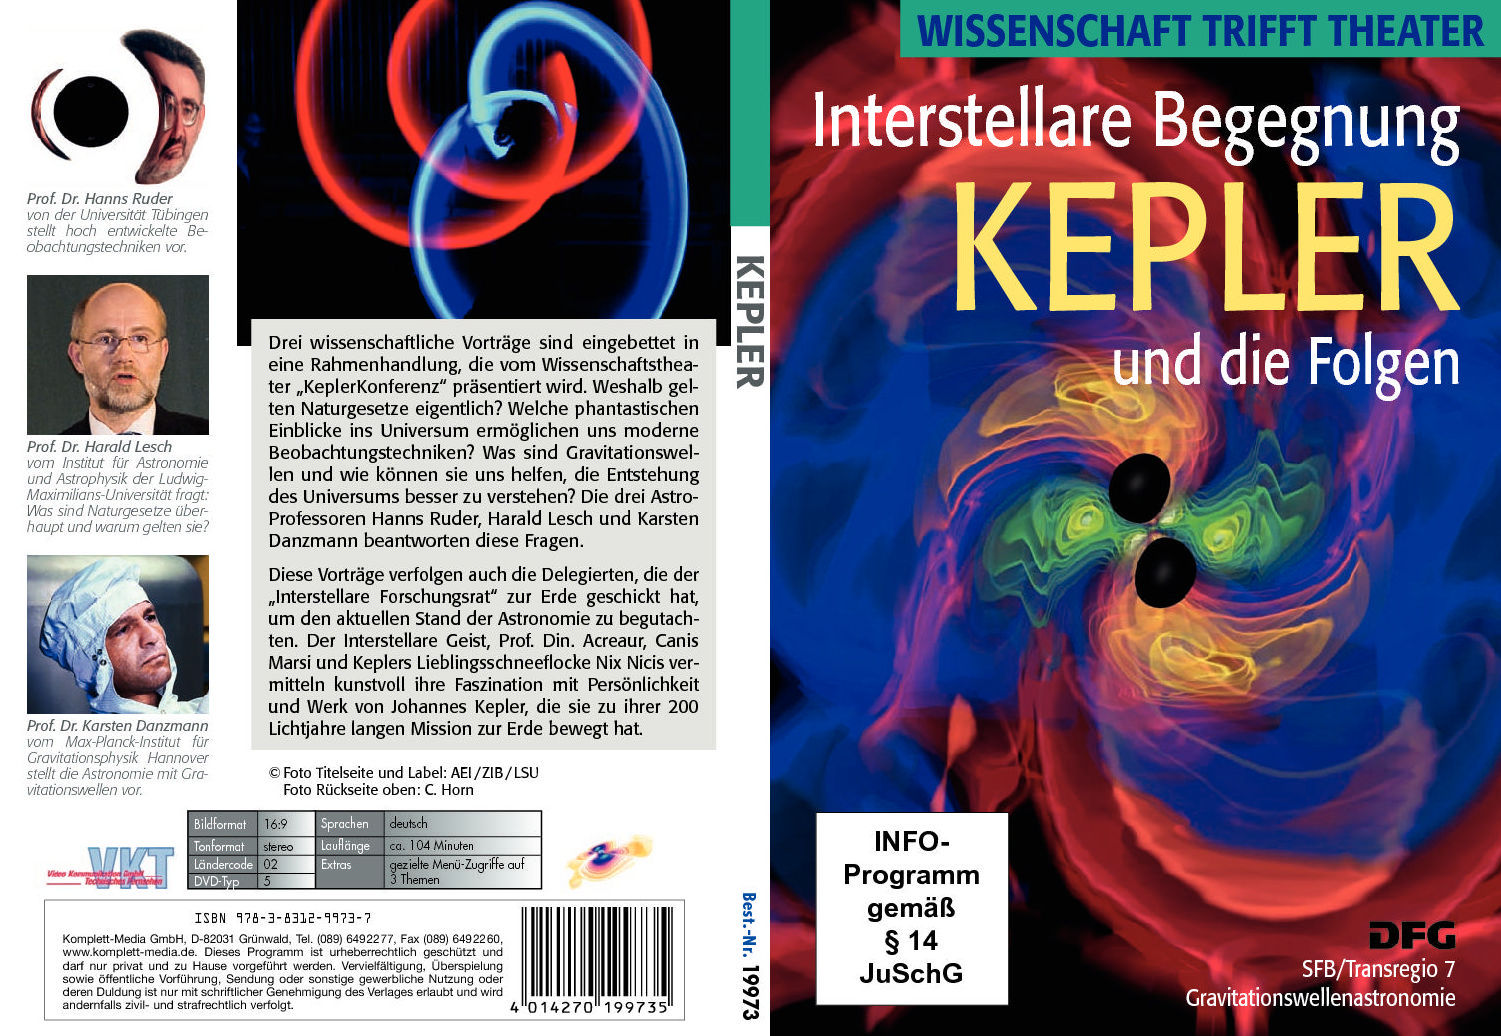 DVD: Interstellare Begegnung